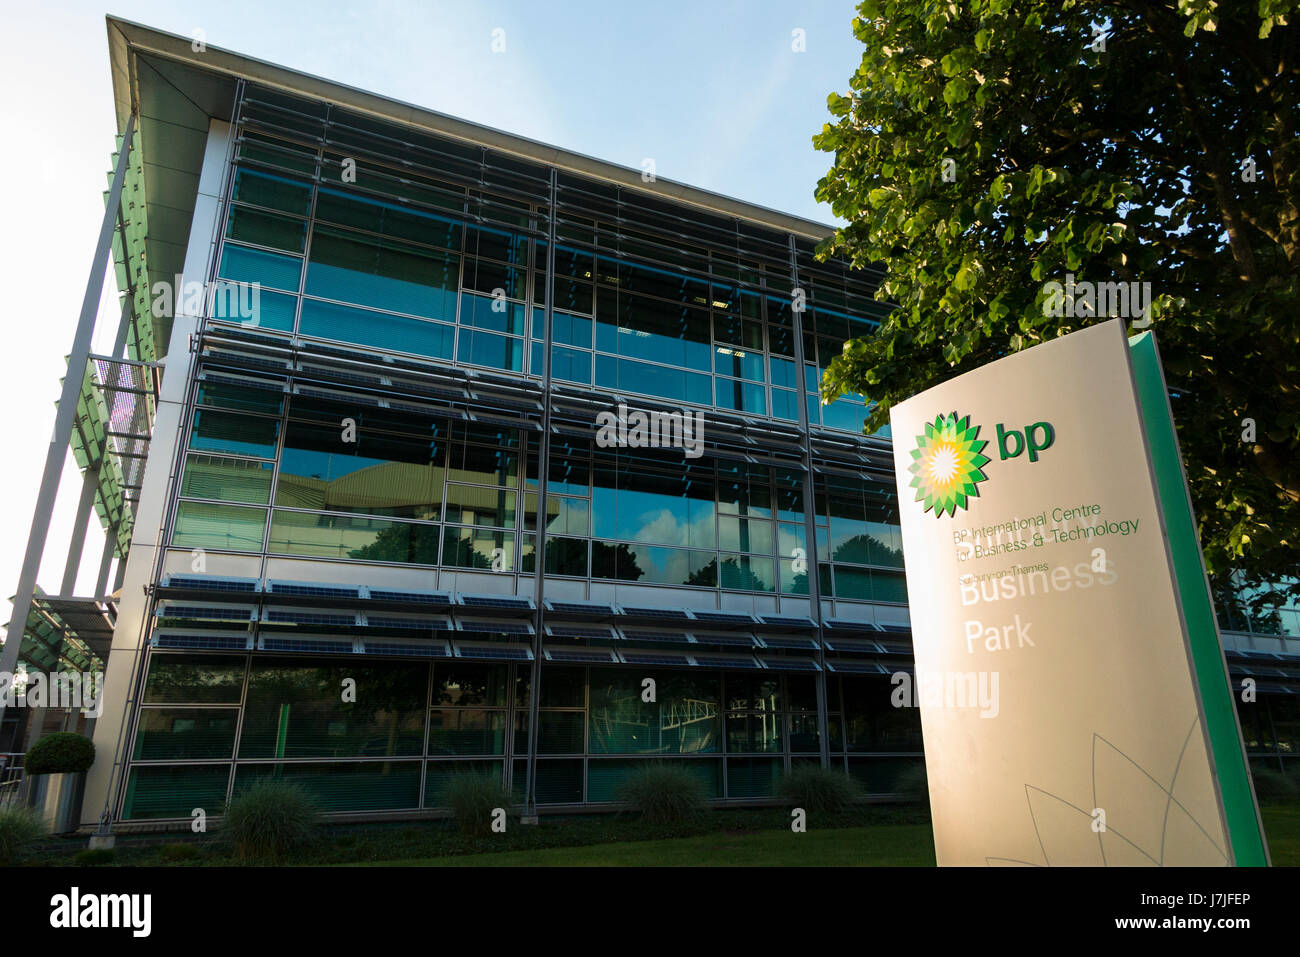 Le parc d'affaires de bureaux Sunbury BP PLC, à la Sunbury Business Park, Sunbury on Thames. Middlesex. Royaume-uni (87) Banque D'Images